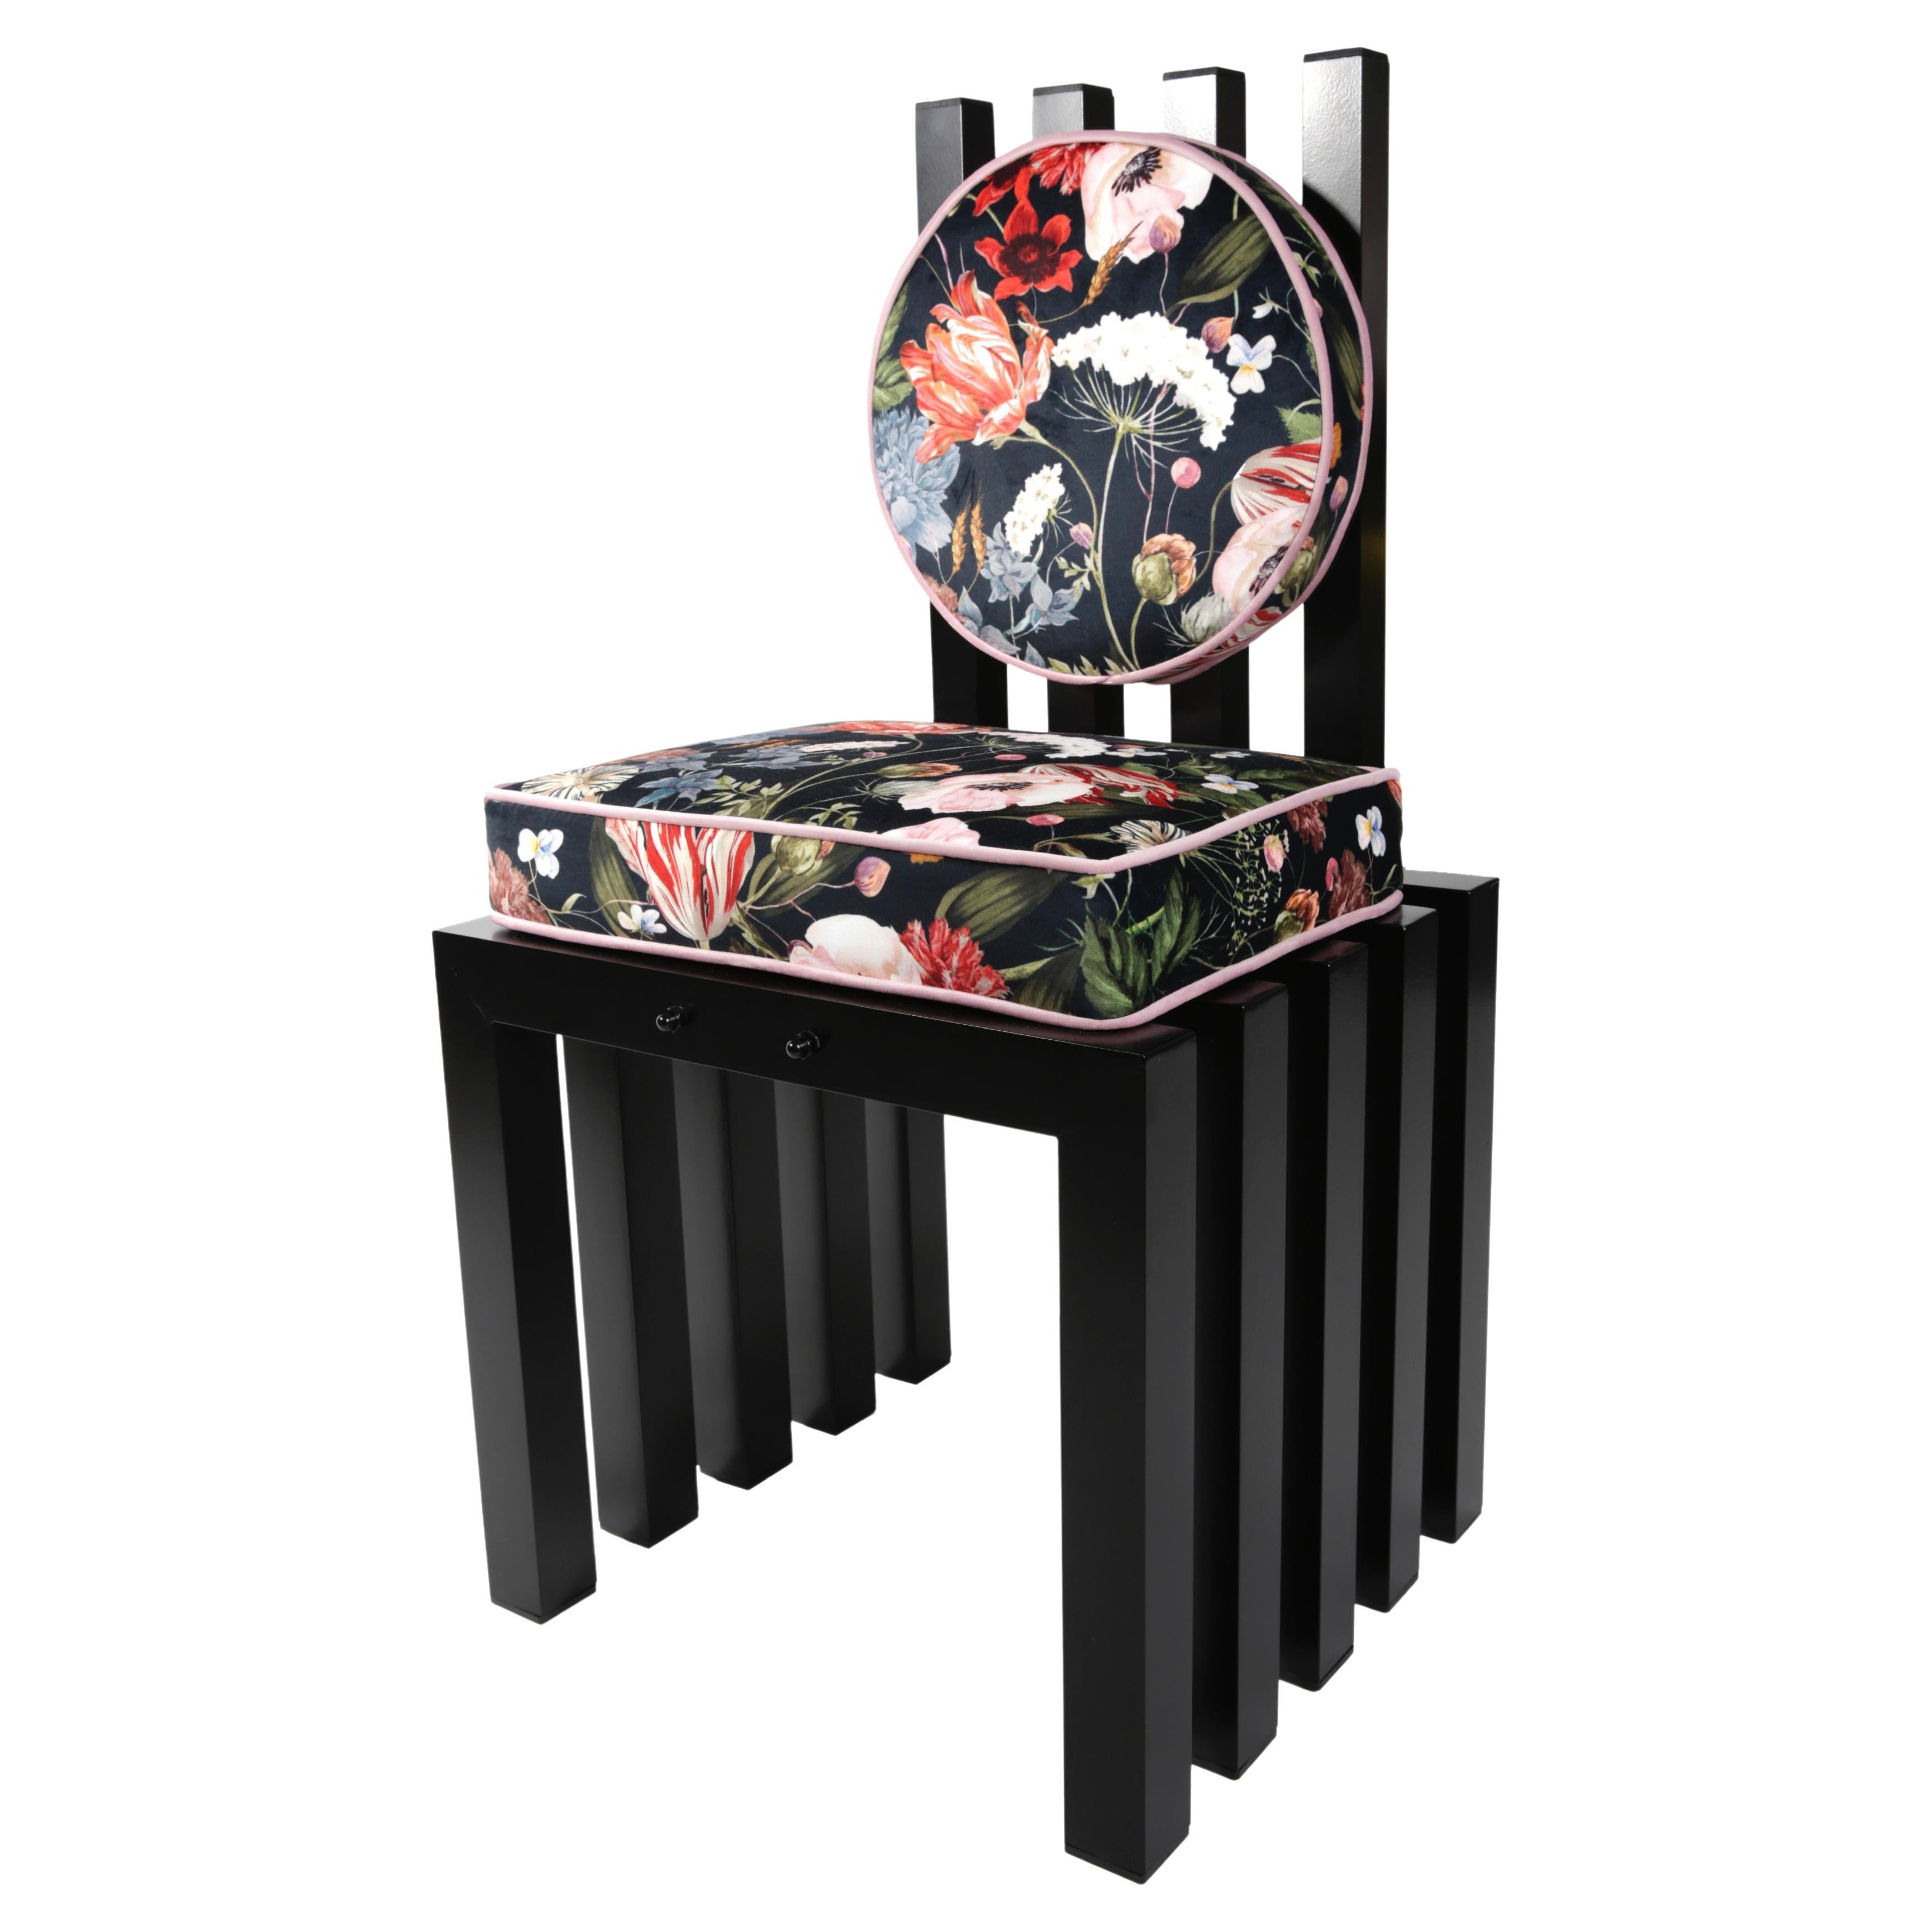 Ennesima, zeitgenössischer Stuhl von Studio Greca; schwarzes Aluminium, geblümter Stoff